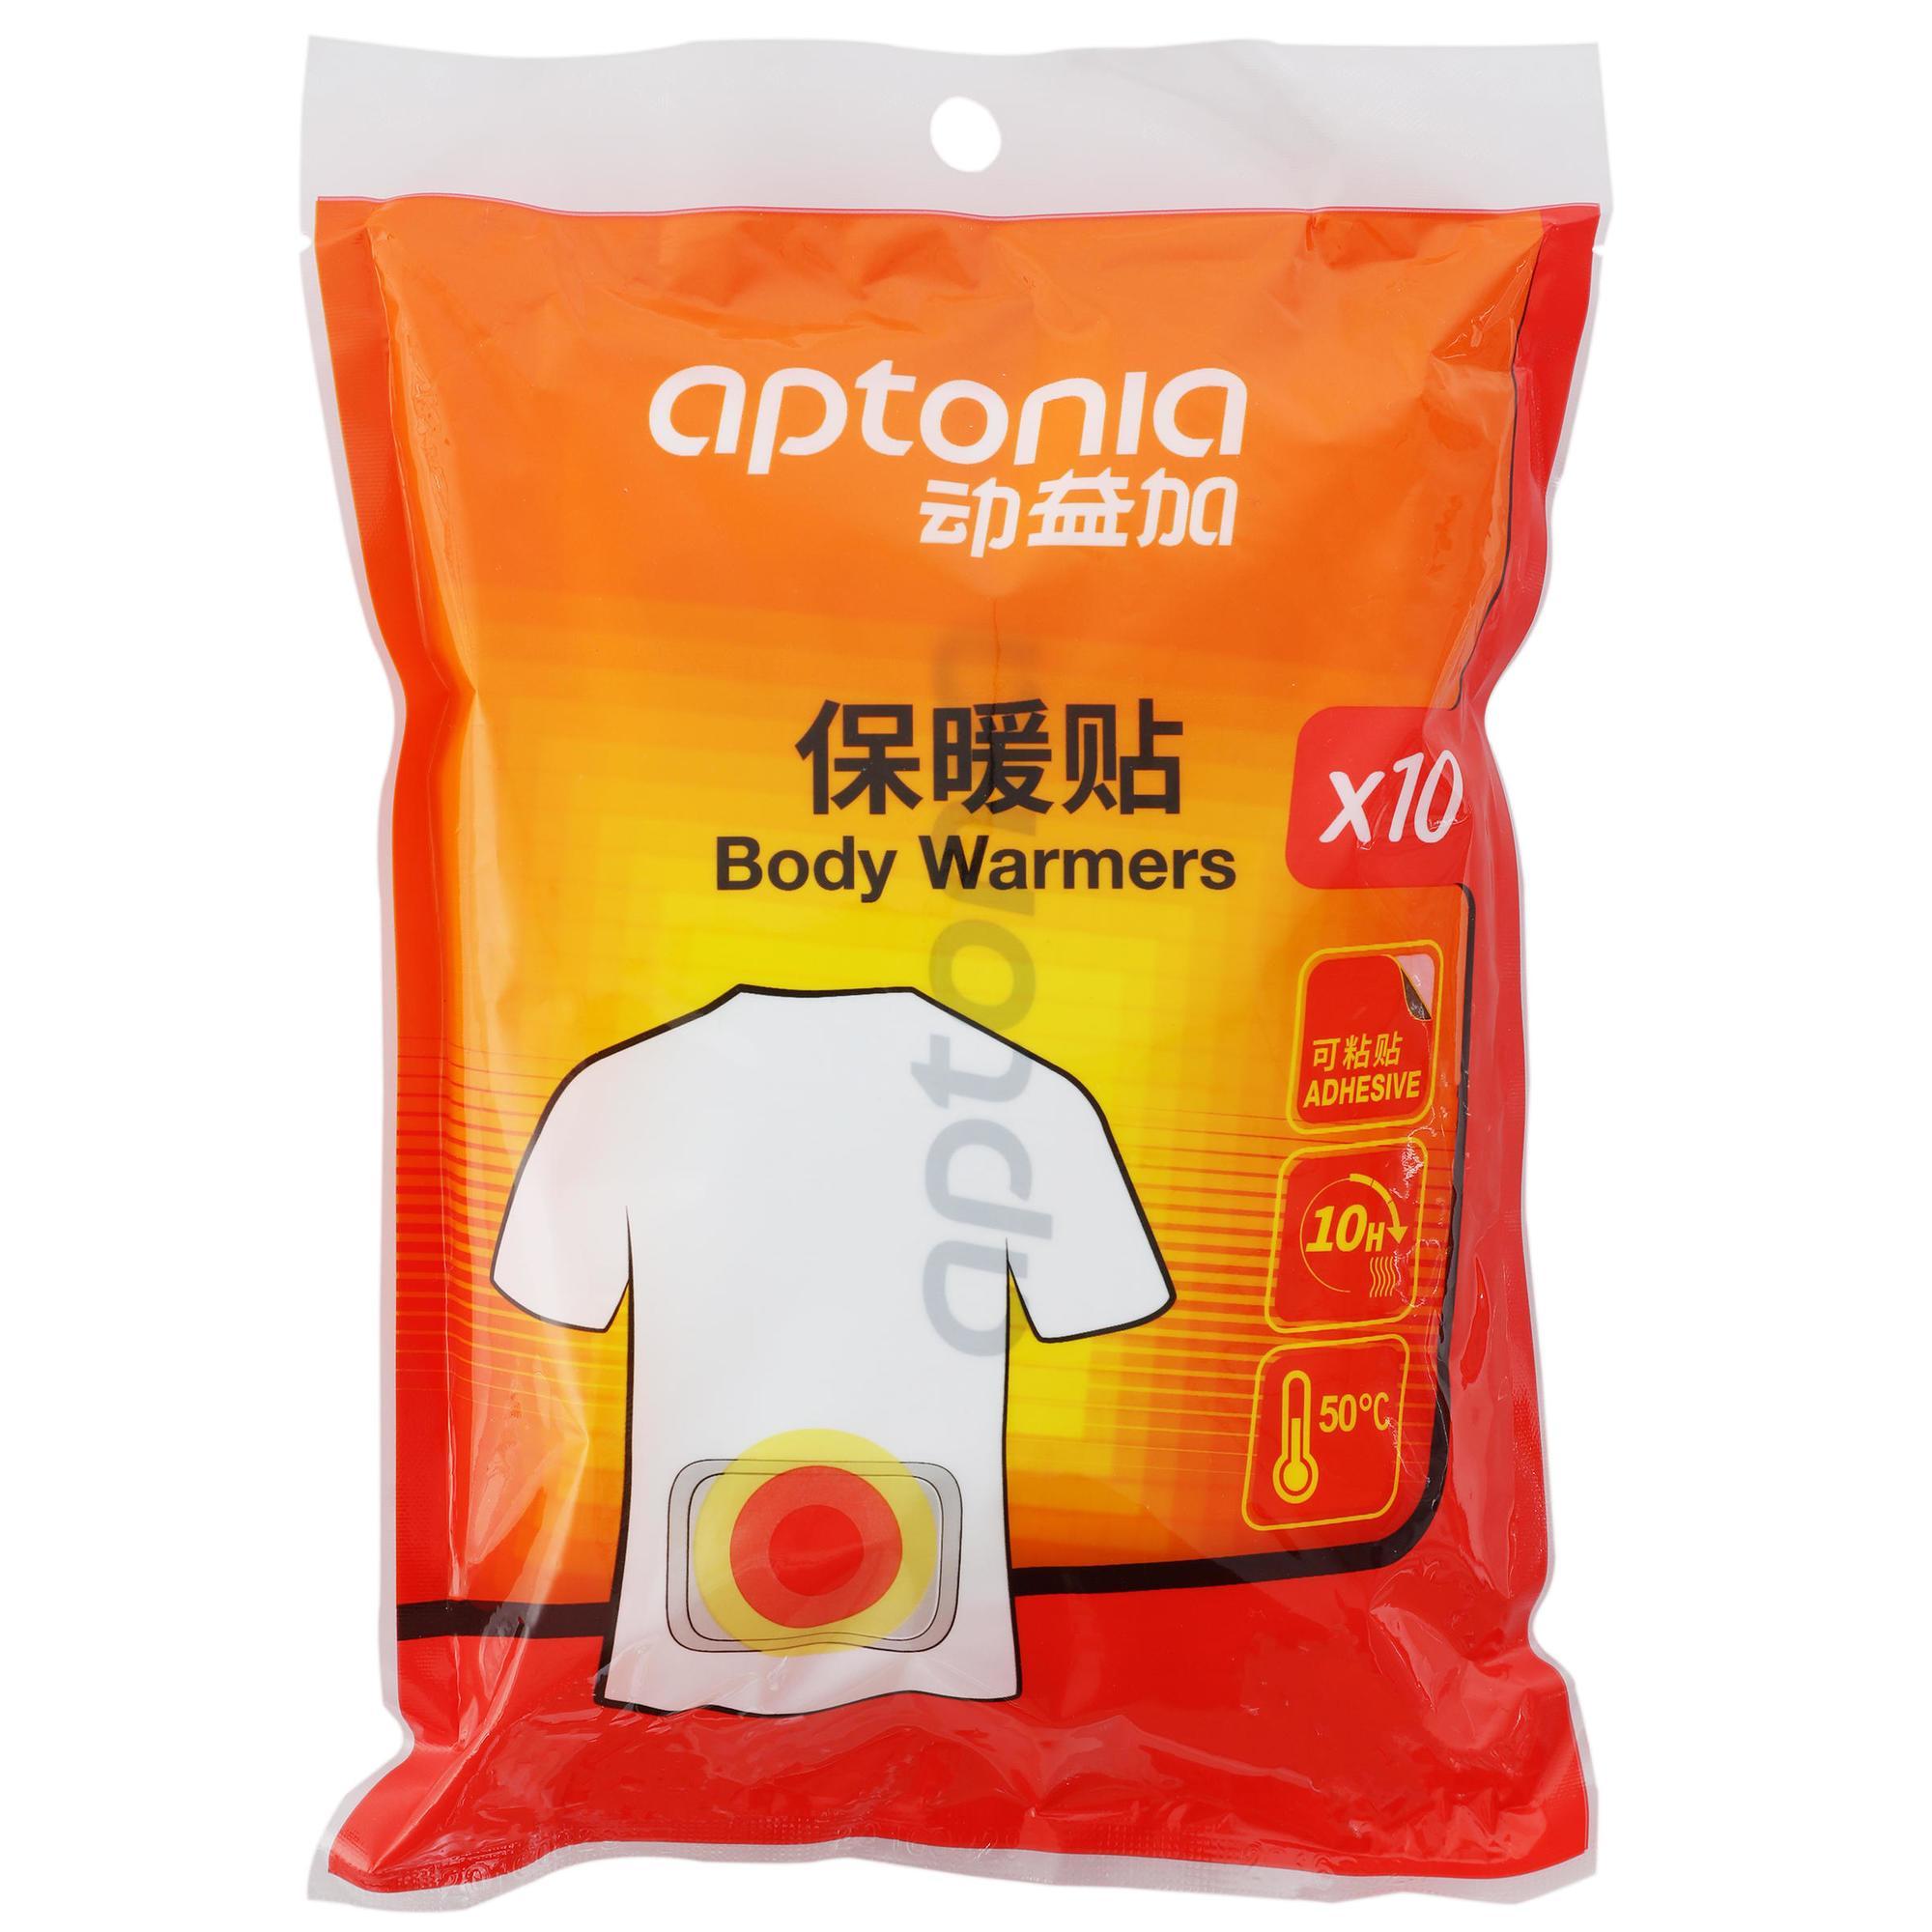 Body warmers x 10 - Decathlon